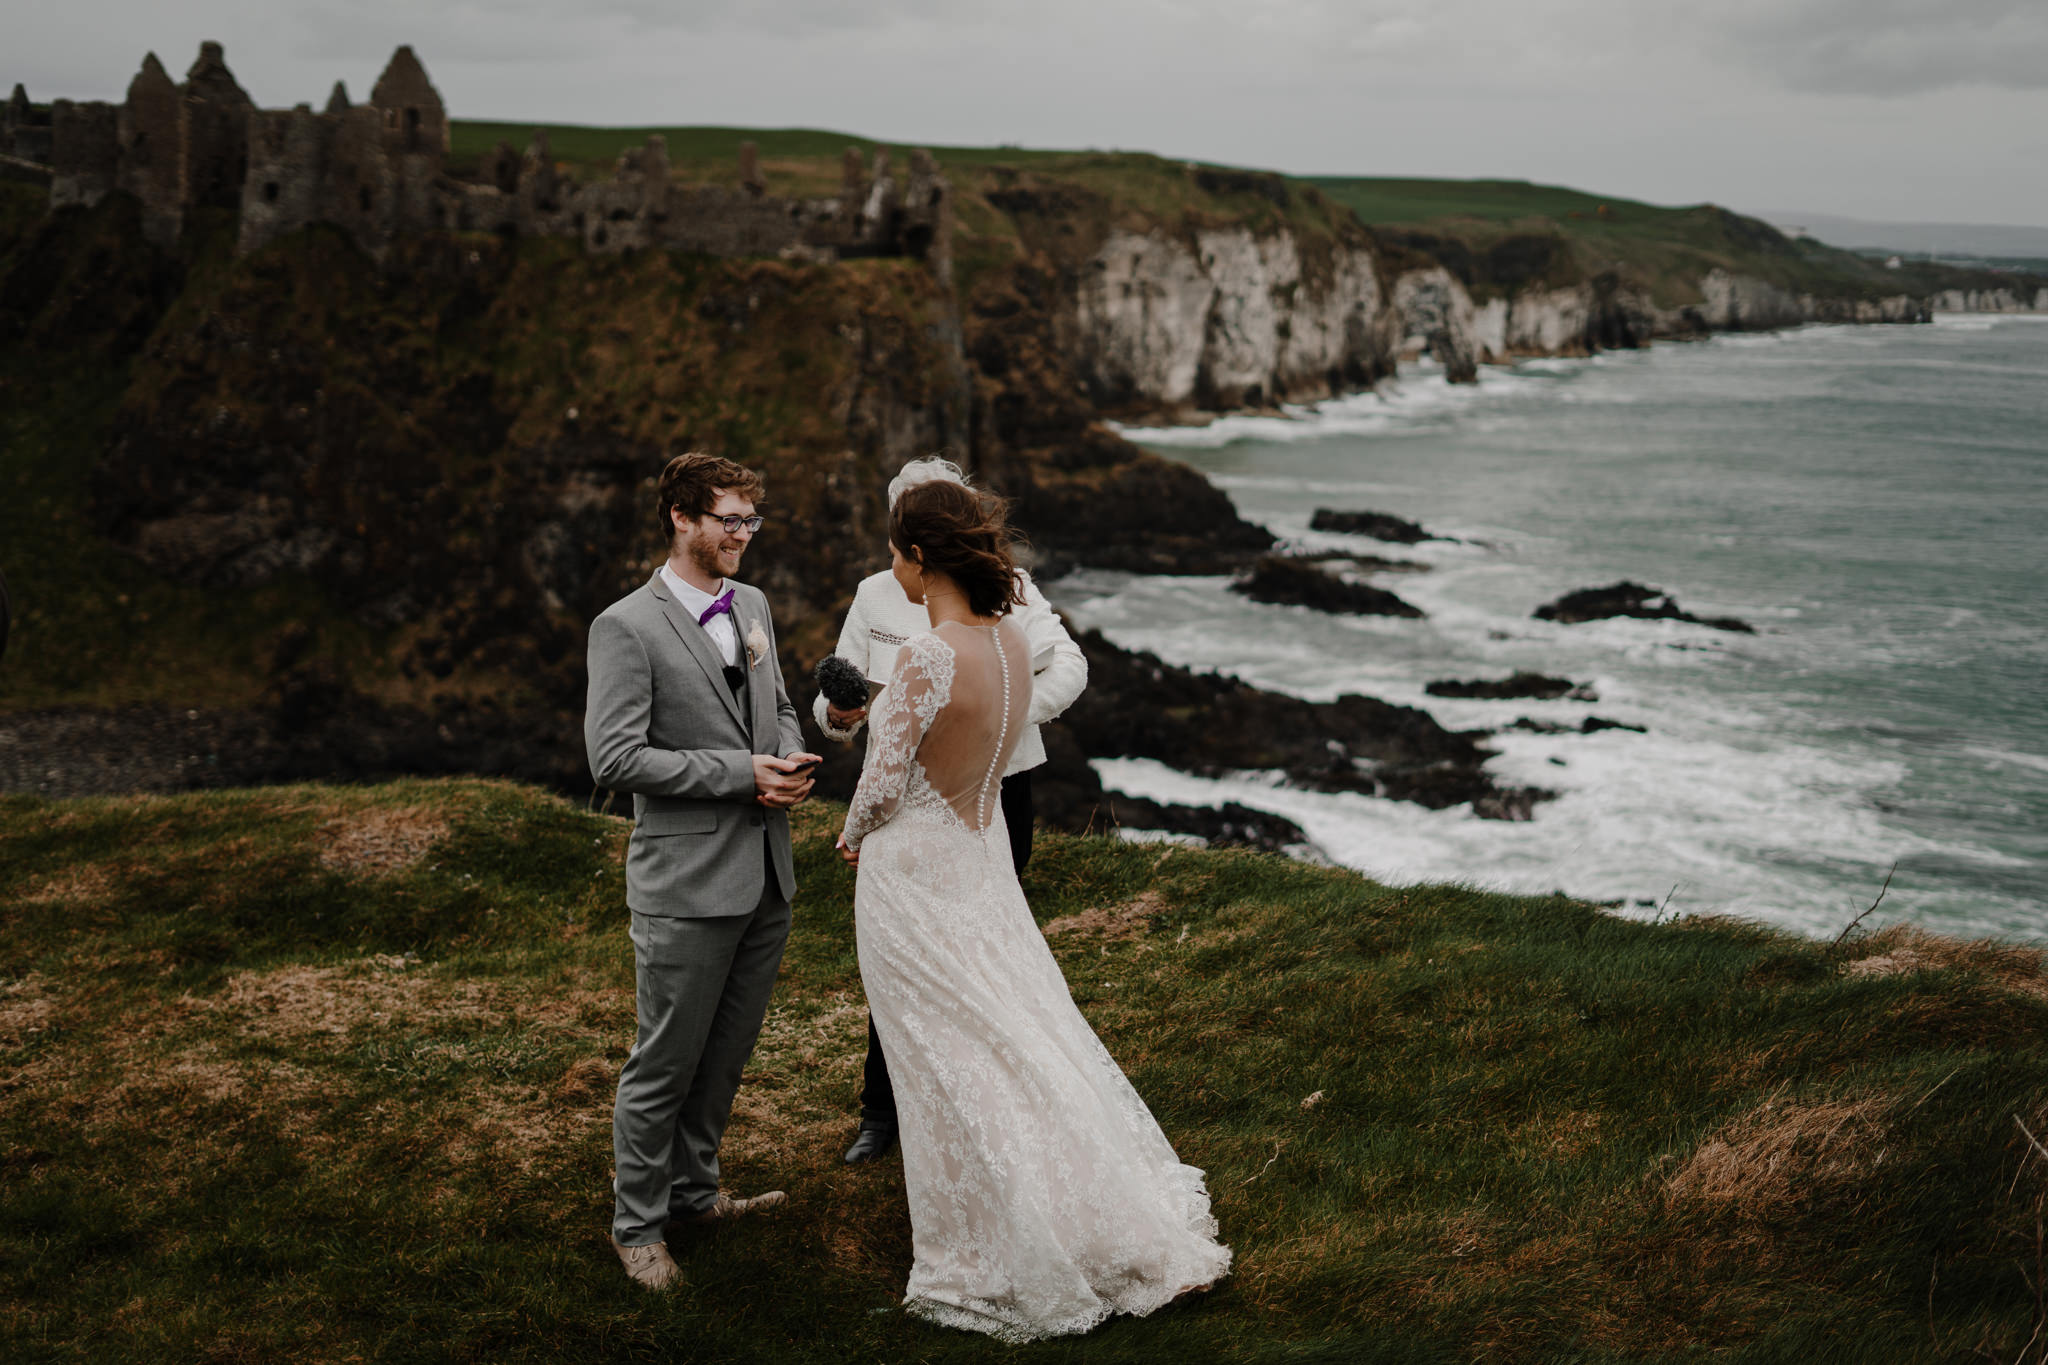 Dunluce castle vows ceremony adventure elopement